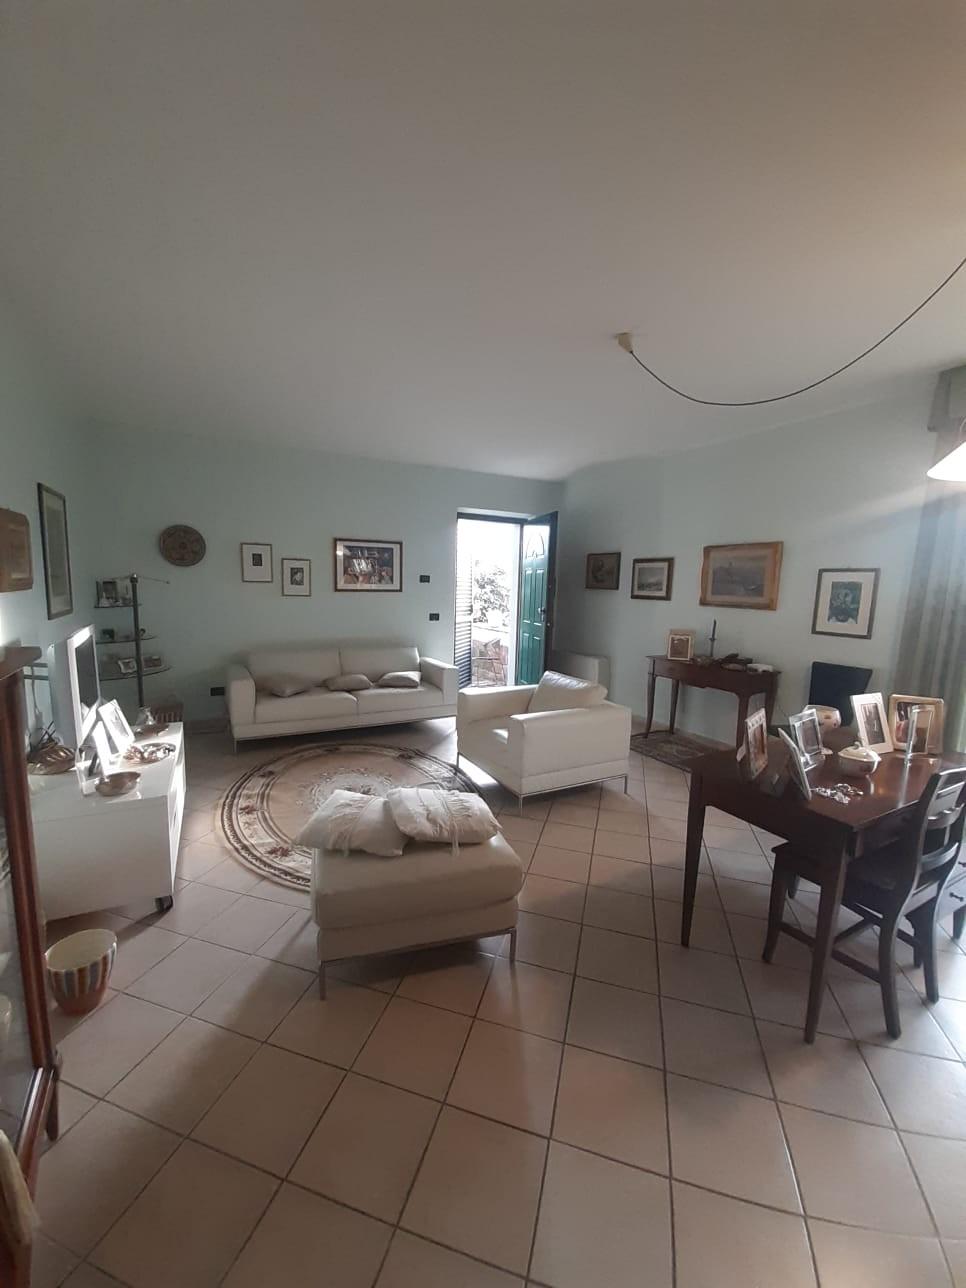 Villa Tri-Quadrifamiliare in vendita a Carrara, 7 locali, prezzo € 370.000 | PortaleAgenzieImmobiliari.it